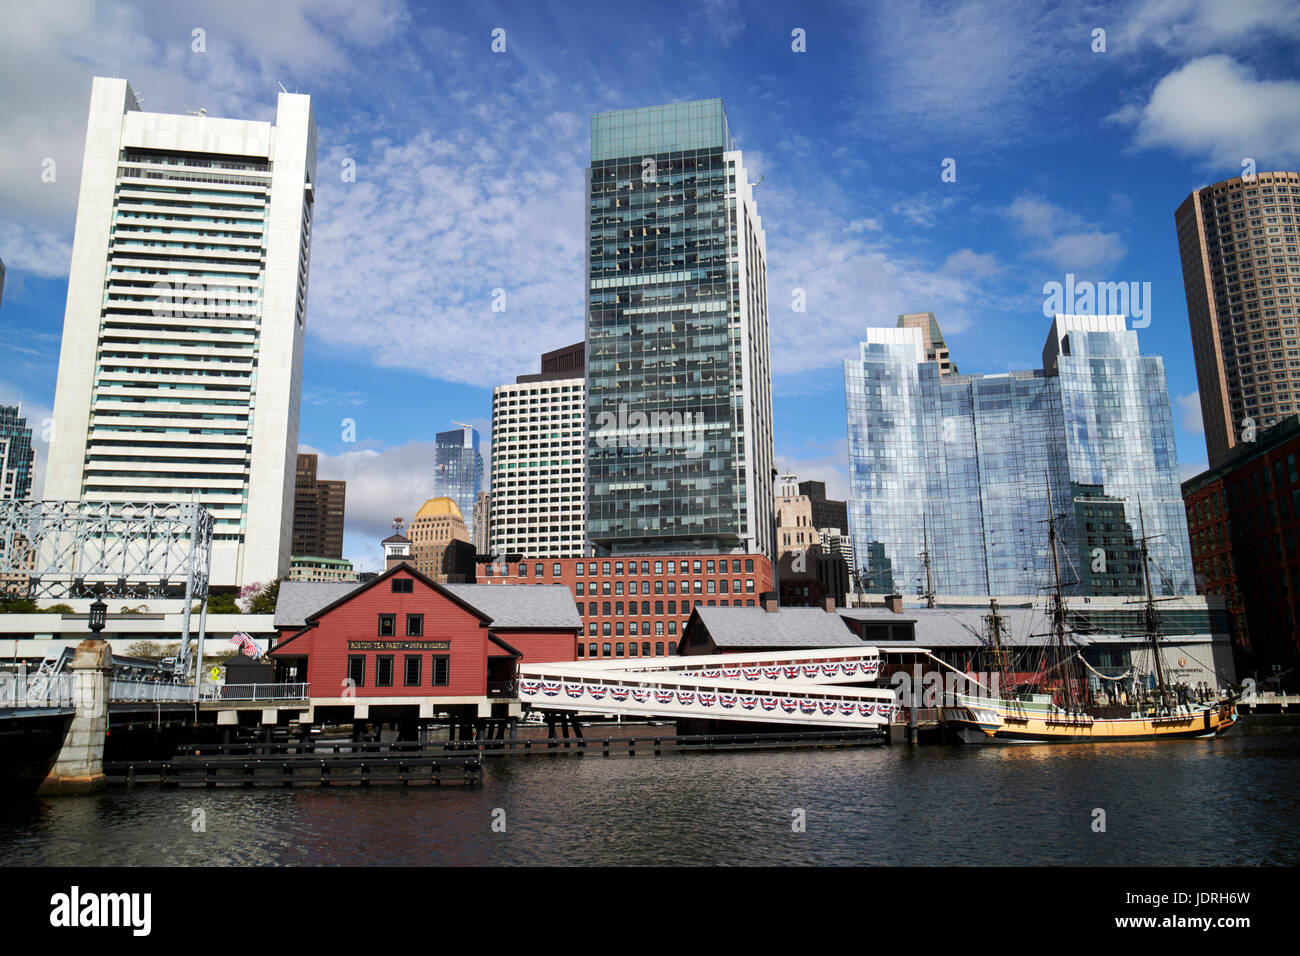 Fort point channel quartier financier et Boston tea party museum skyline cityscape Boston USA Banque D'Images